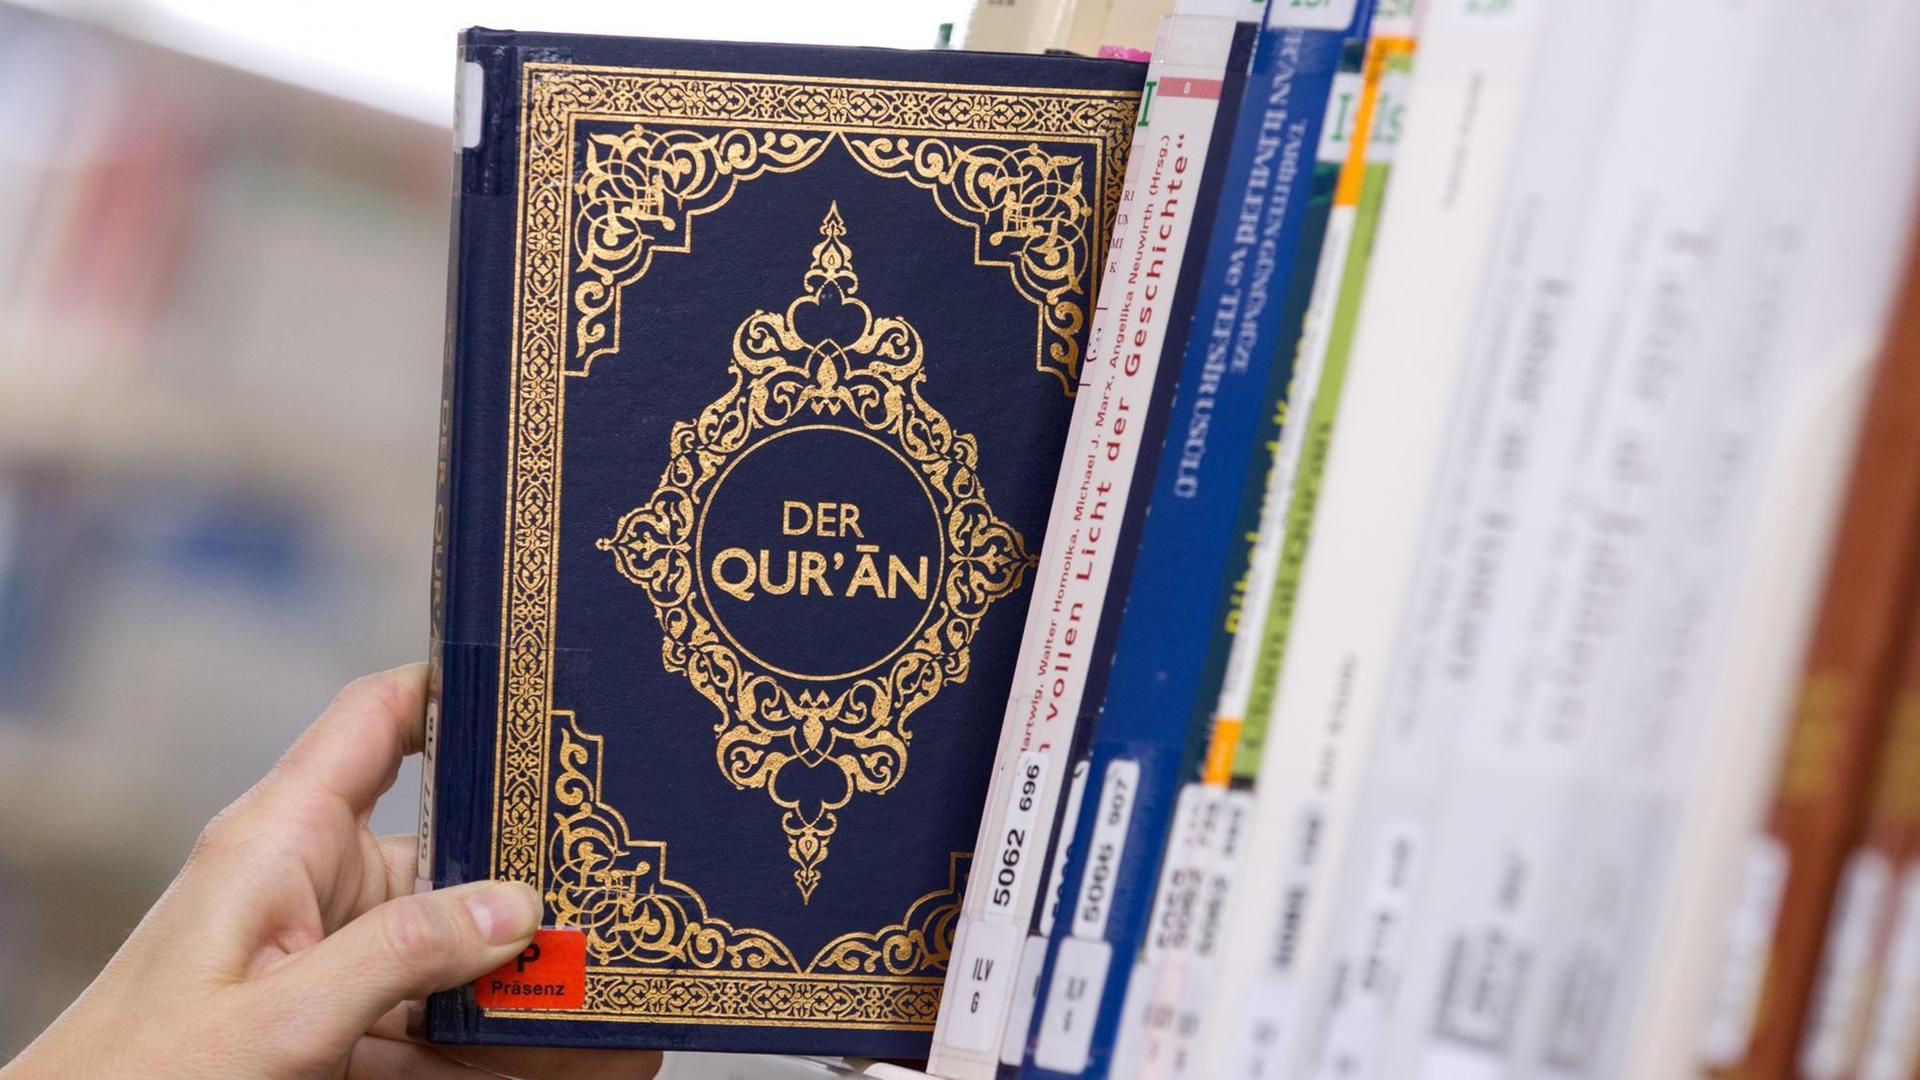 Eine Ausgabe des Koran (Quran) wirdaus einem Regal gezogen